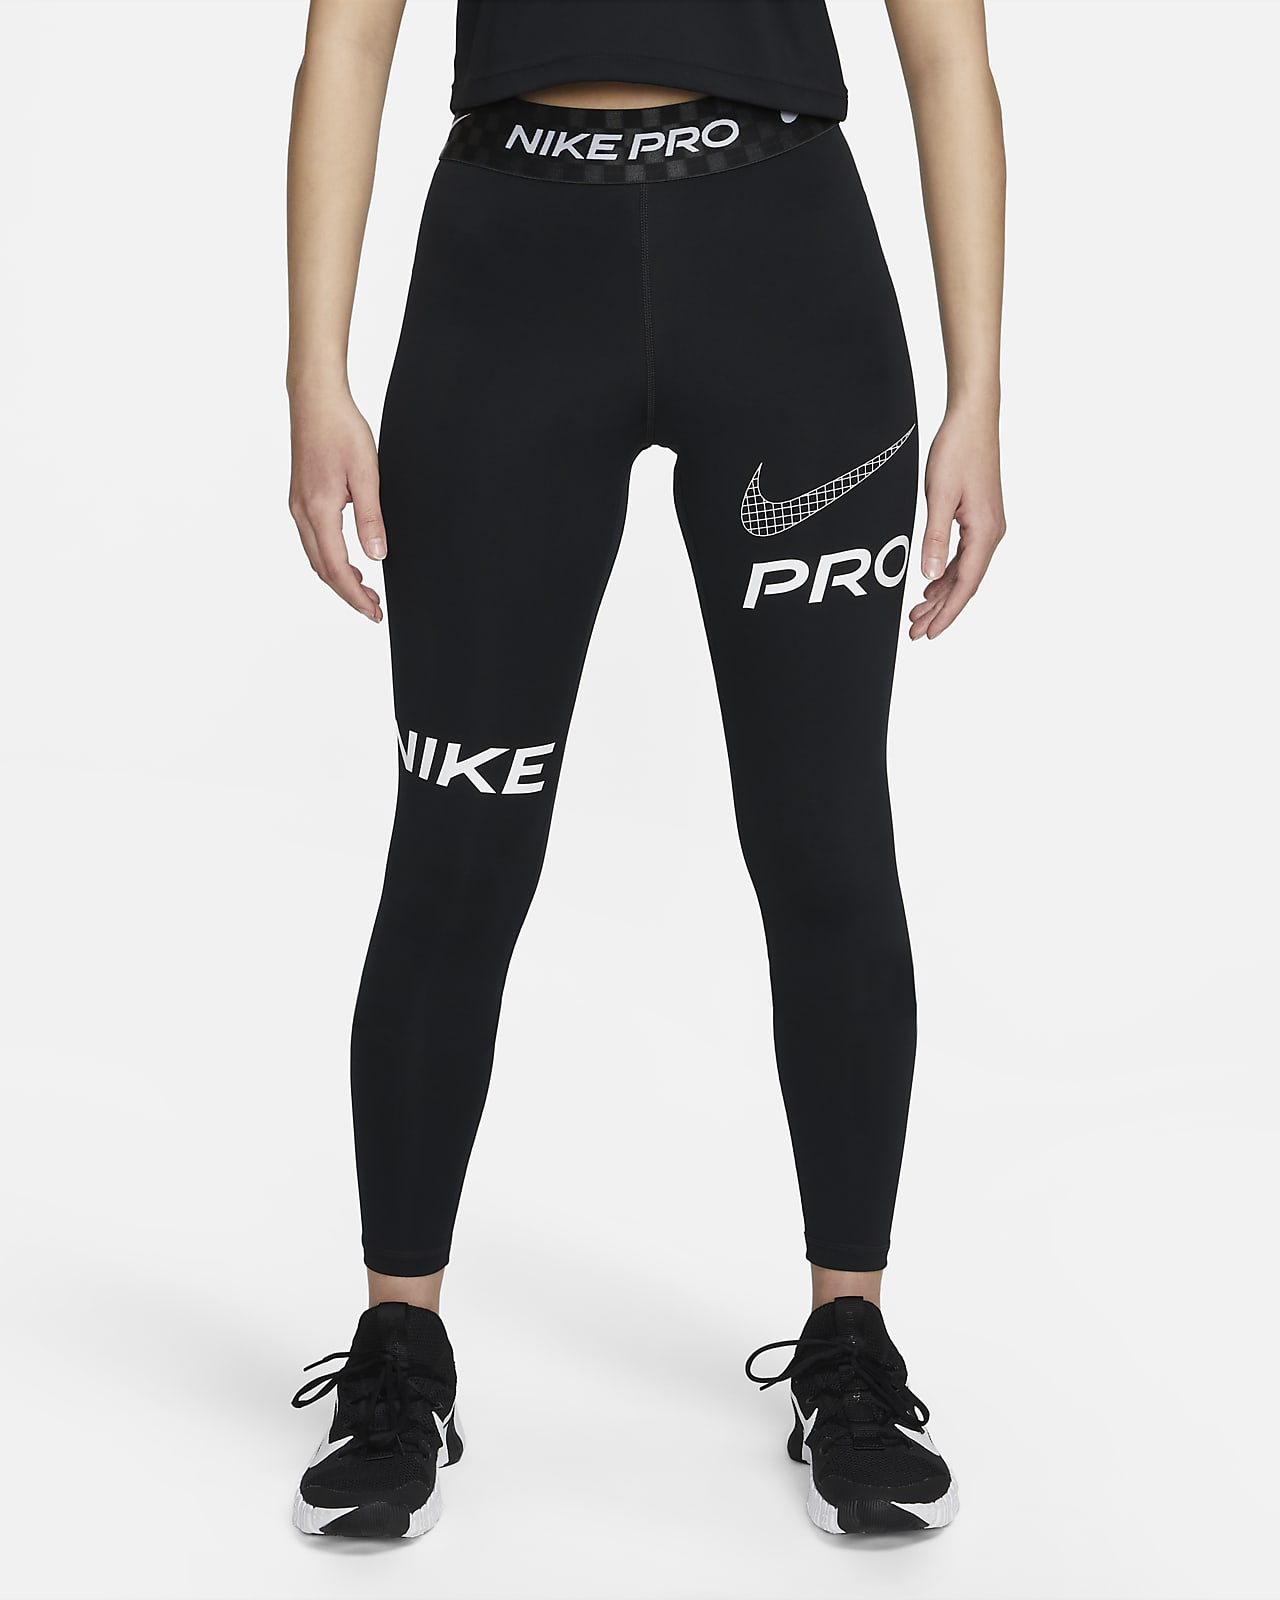 เลกกิ้งเทรนนิ่งขายาวเอวปานกลางผู้หญิงมีกราฟิกเต็มความยาว Nike Pro Dri-FIT